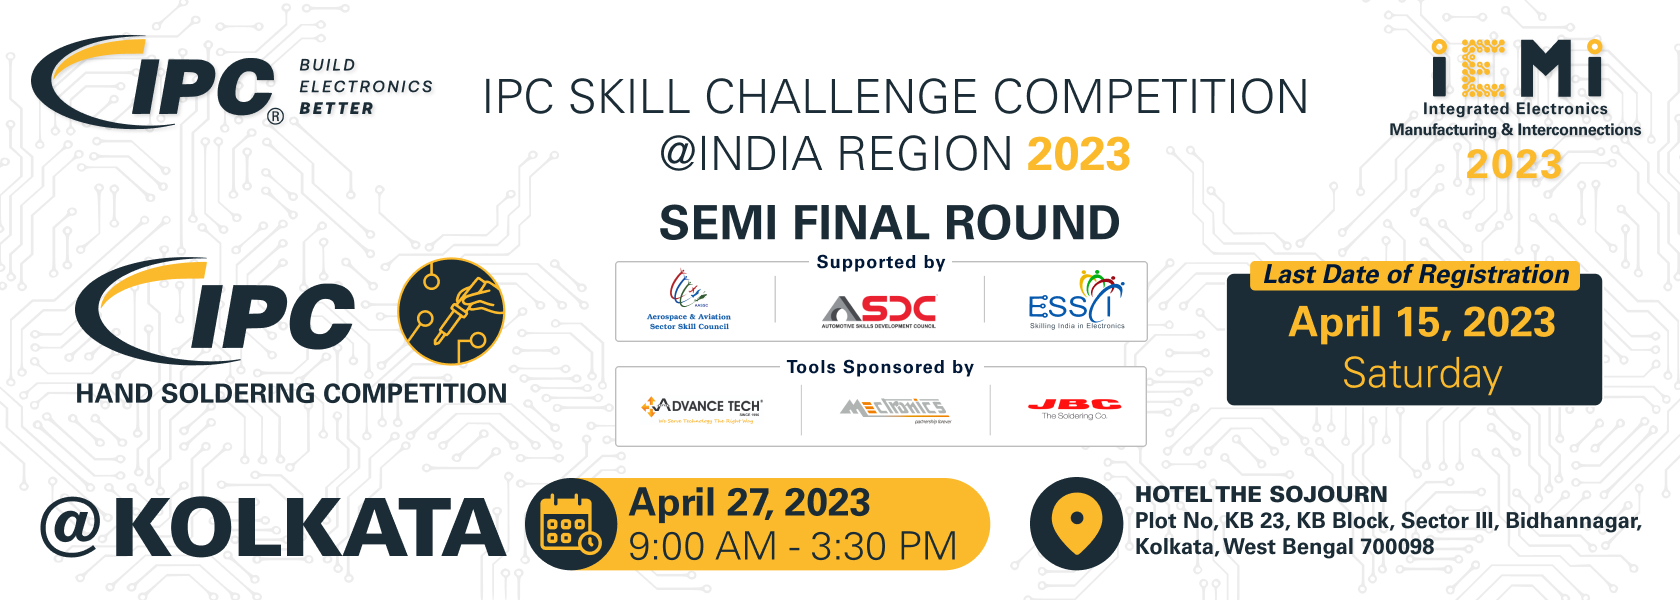 IPC skill Challenge Kolkata April 27 banner 1680x600